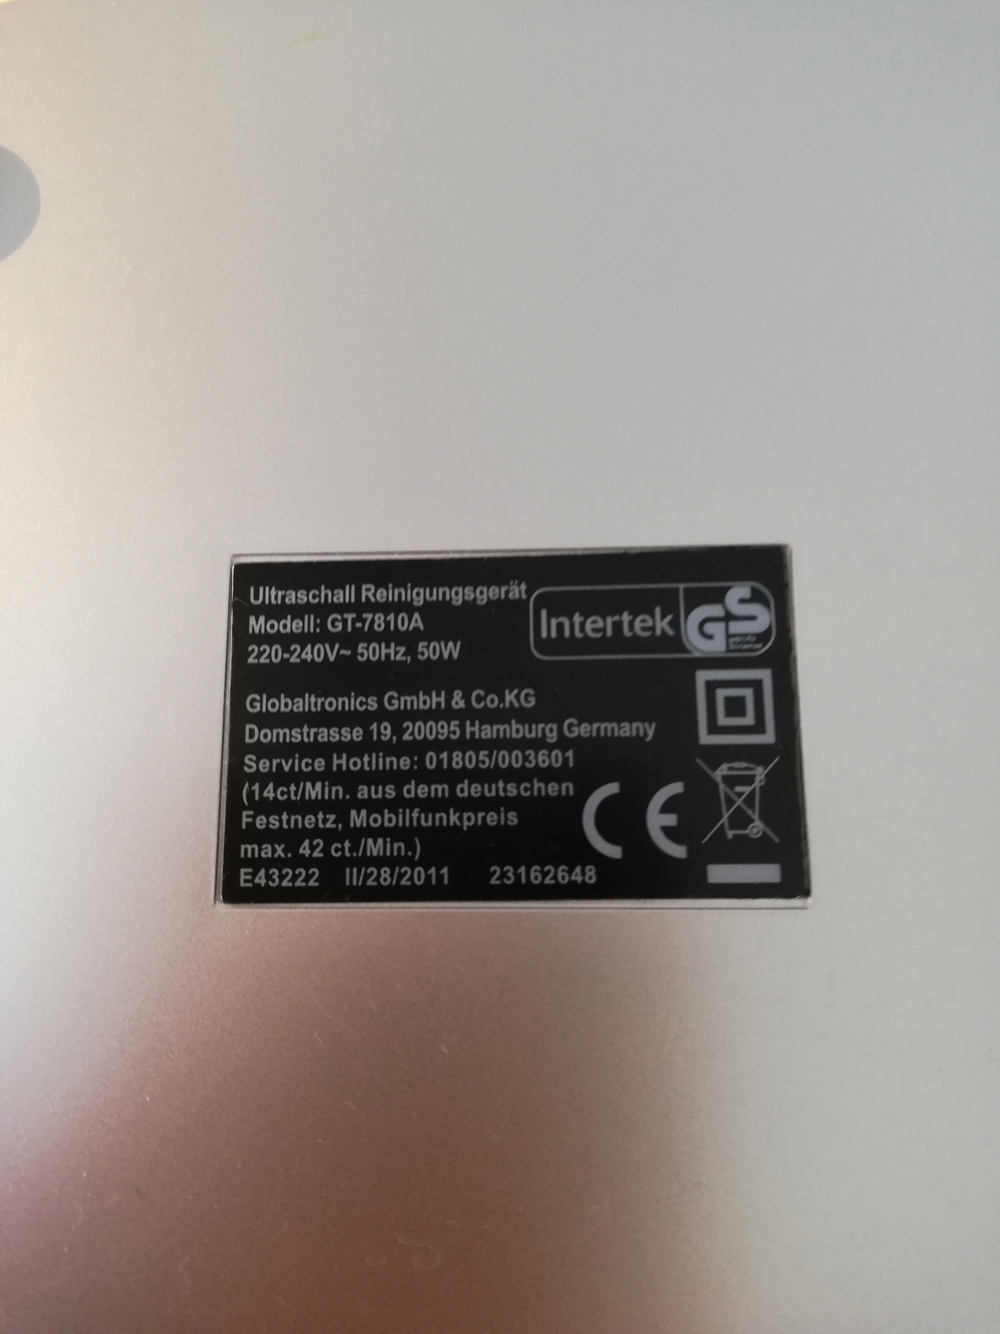 Studio GT-7810A Ultraschall-Reinigungsgerät